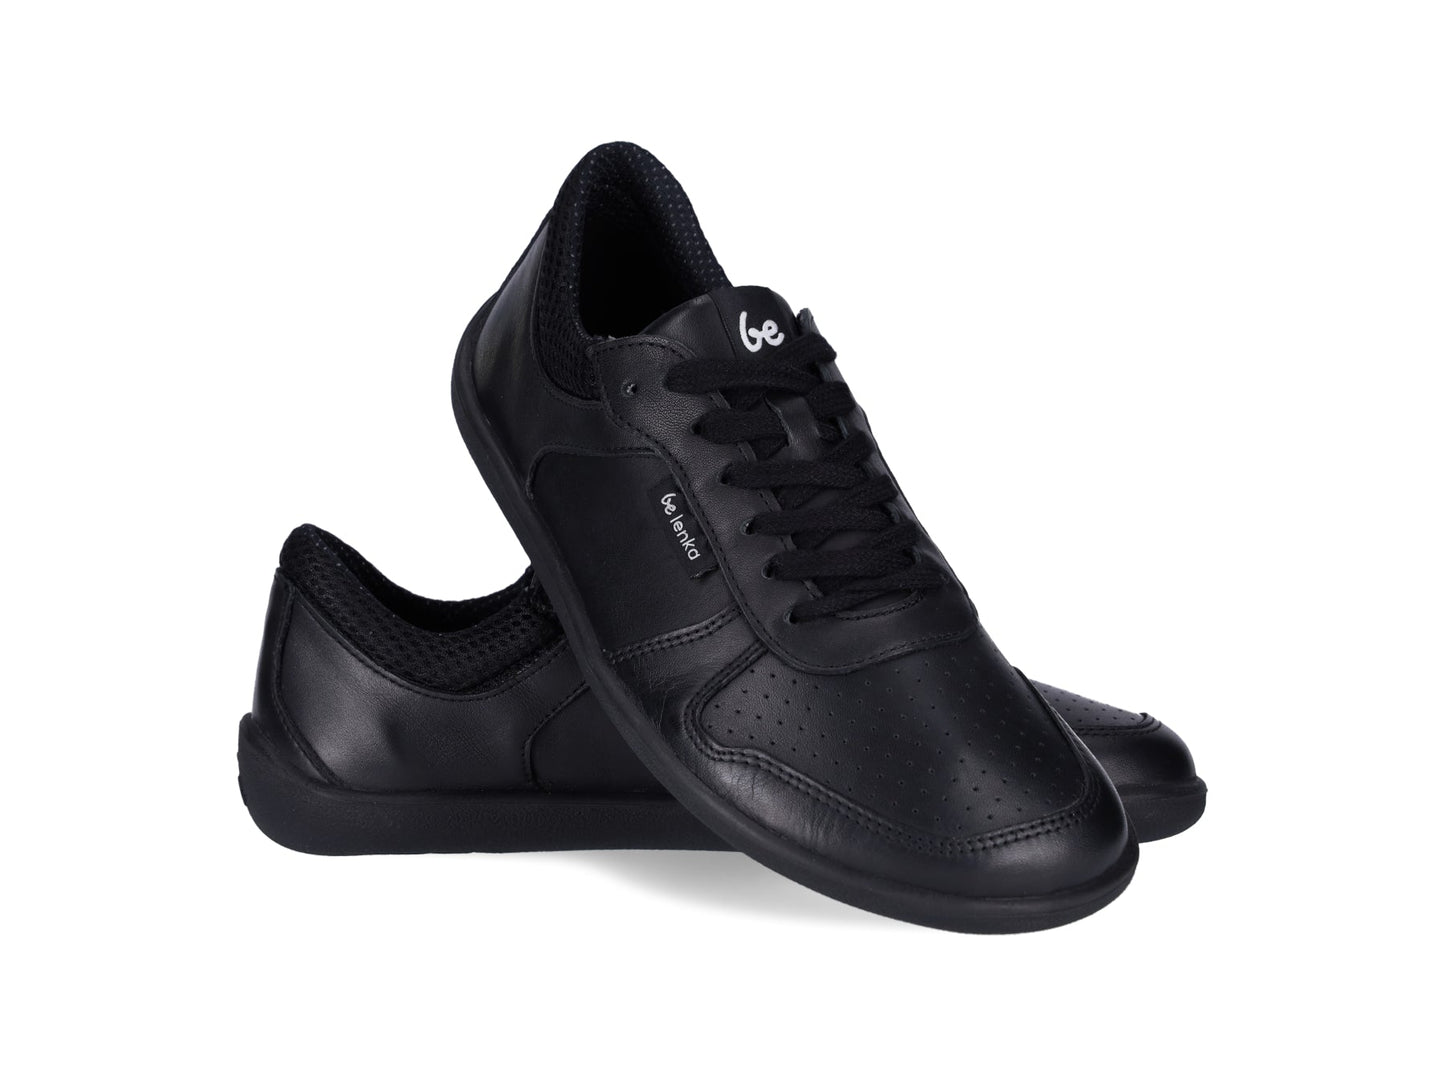 Barefoot Sneakers - Be Lenka Champ 2.0 - All Black-Be Lenka-Cacles Barefoot